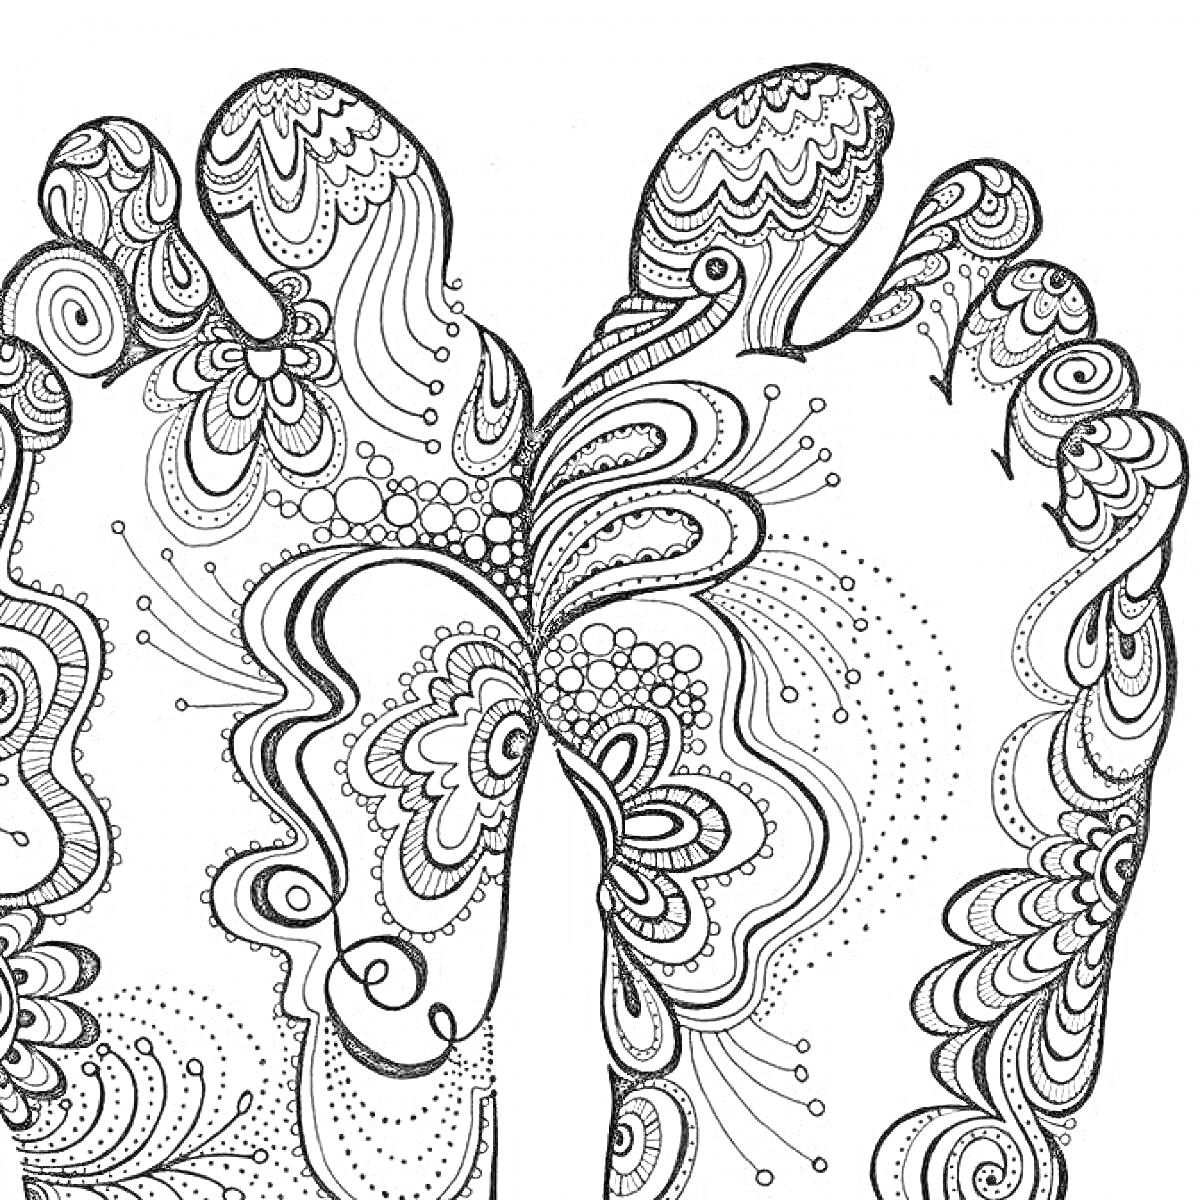 Две стопы с узорами в стиле хиппи, включая цветочные мотивы, завитки и точки